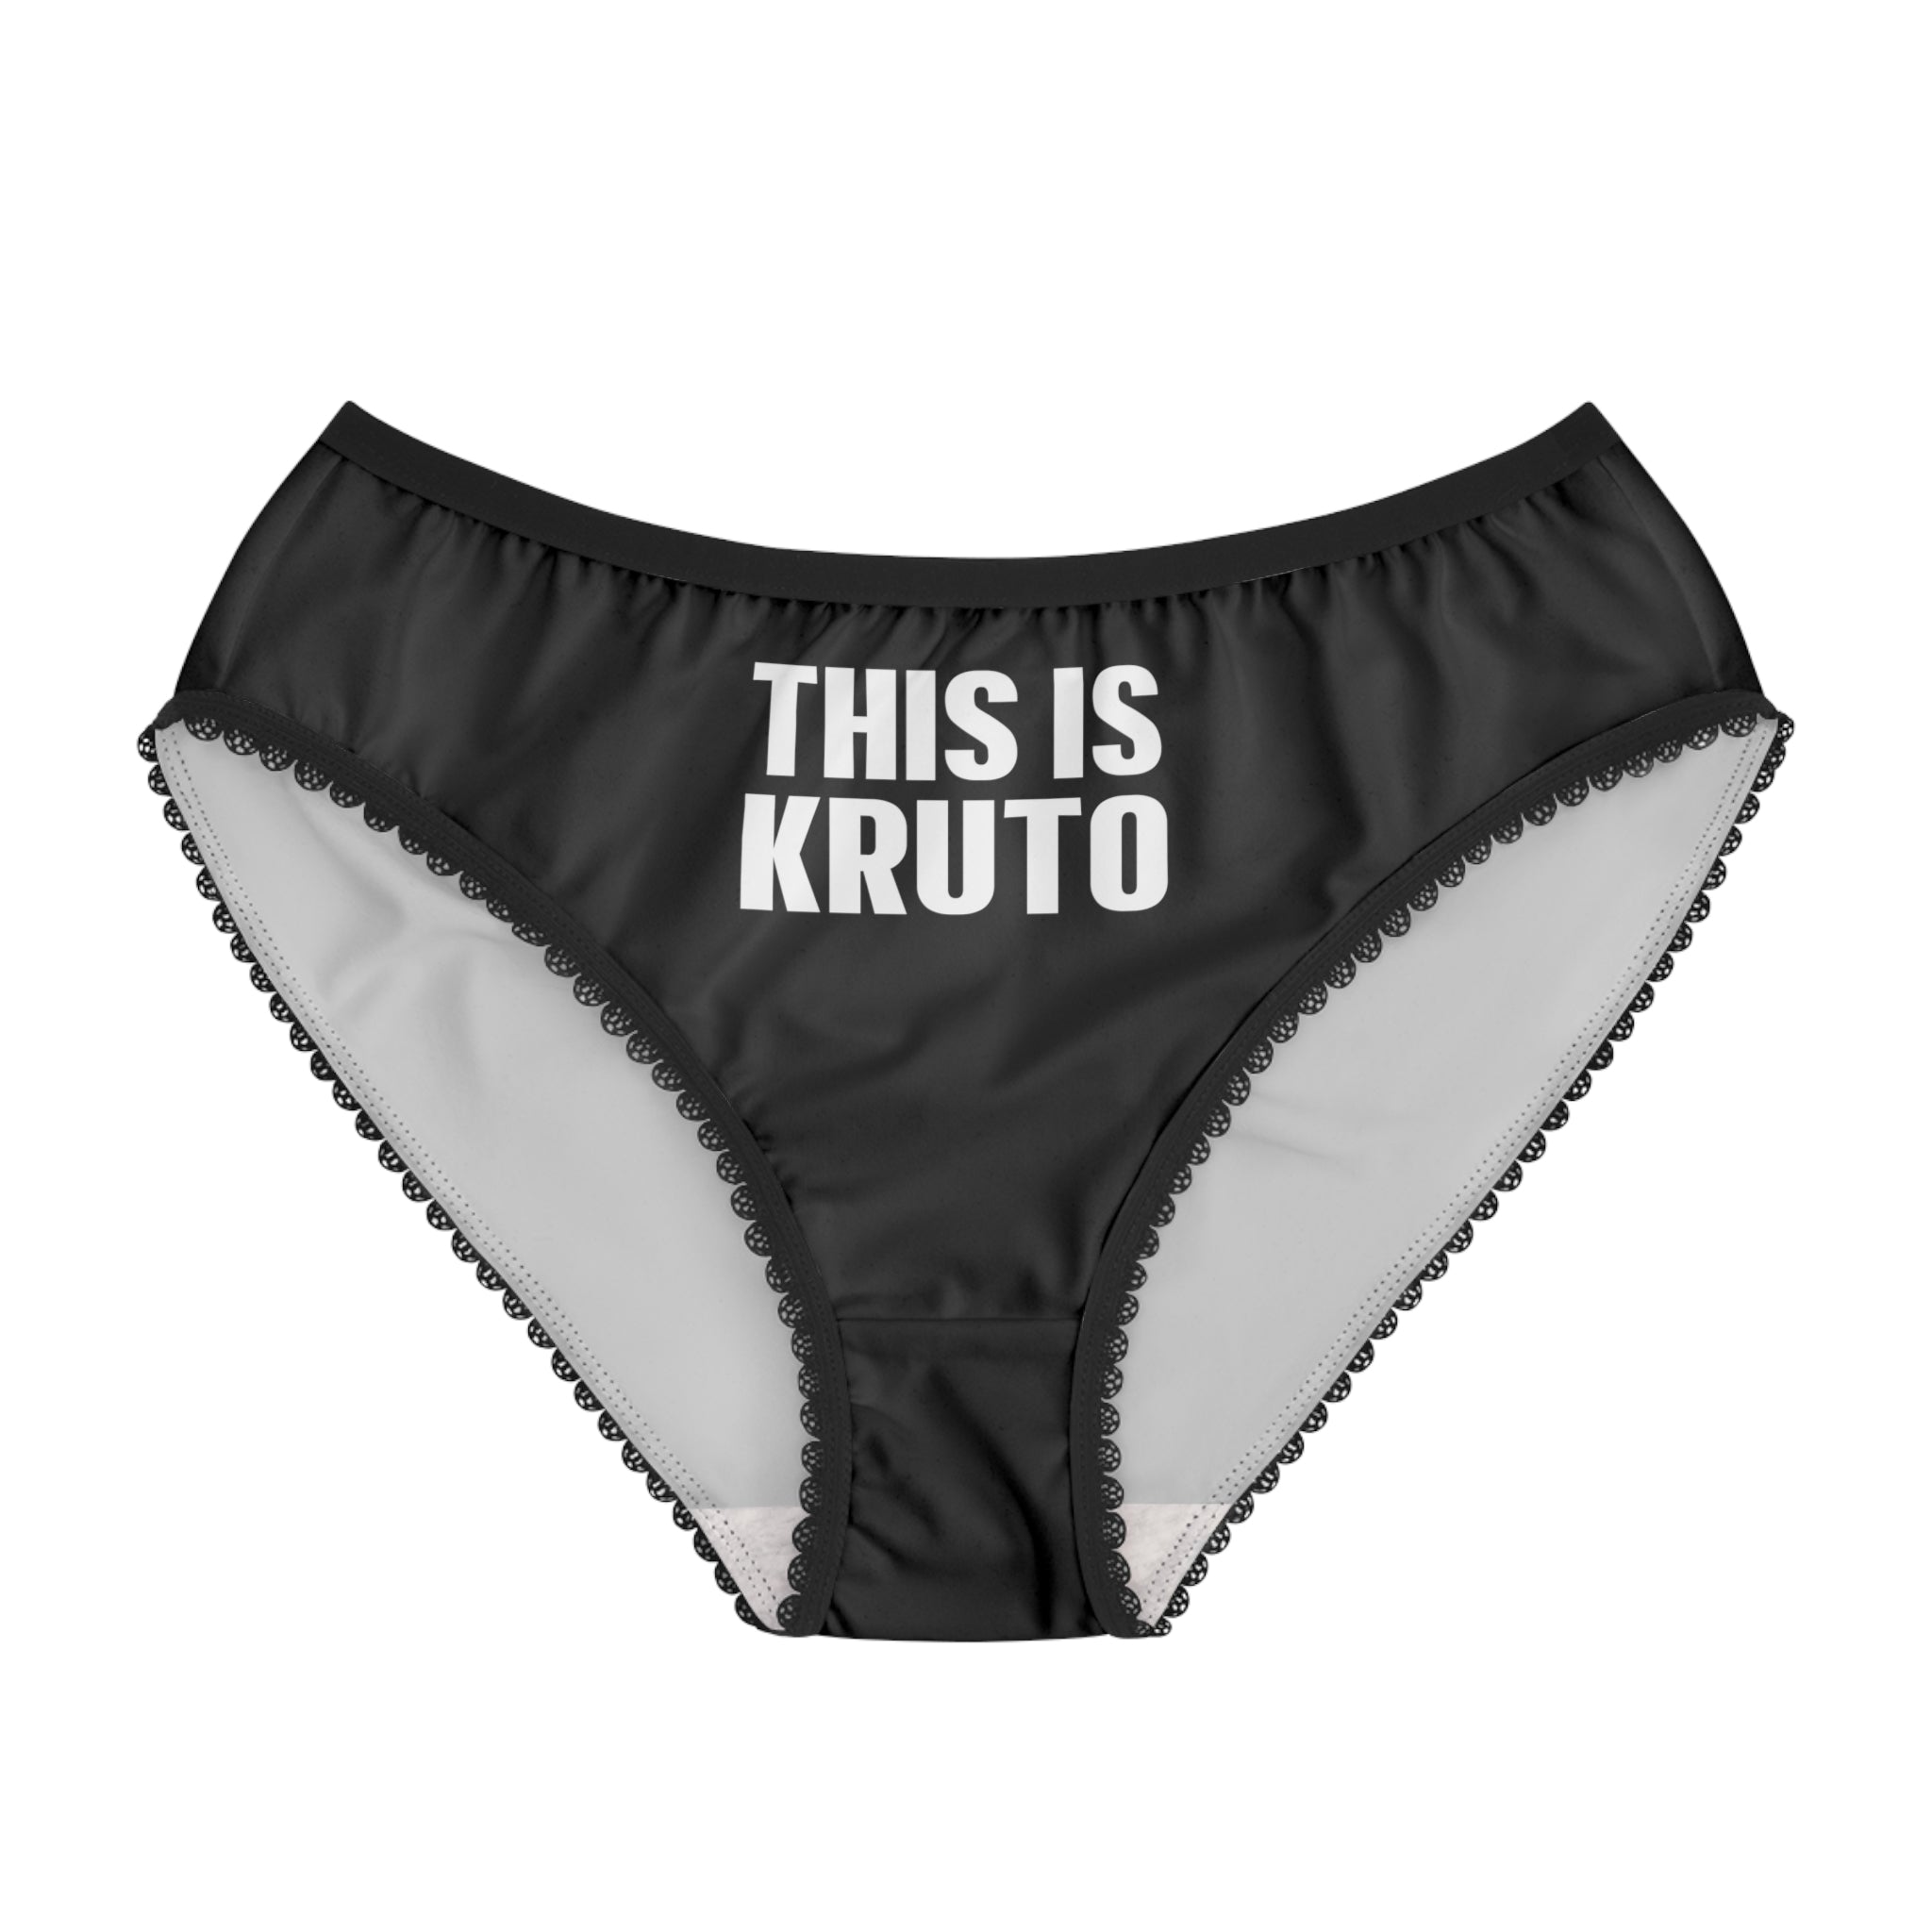 This is KRUTO Women's Briefs